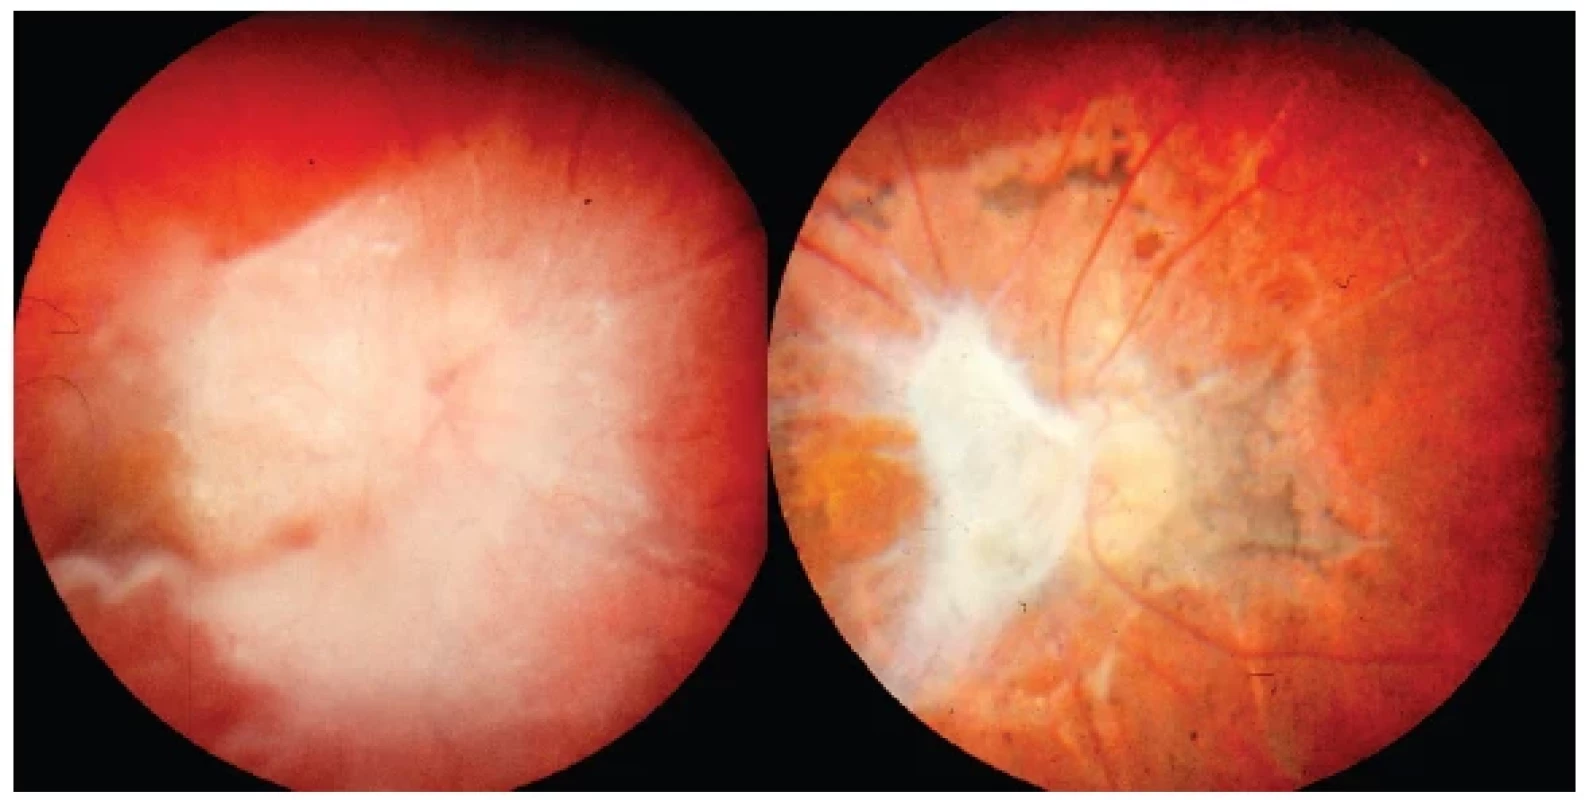 Vlevo: Obraz toxokarové neuropatie s vitritreální reakcí v okolí před celkovou
terapií
Vpravo: Výrazné jizevnaté sítnicové změny s atrofií papily zrakového nervu a zbytky vitreální
membrány po kombinované léčbě o rok později